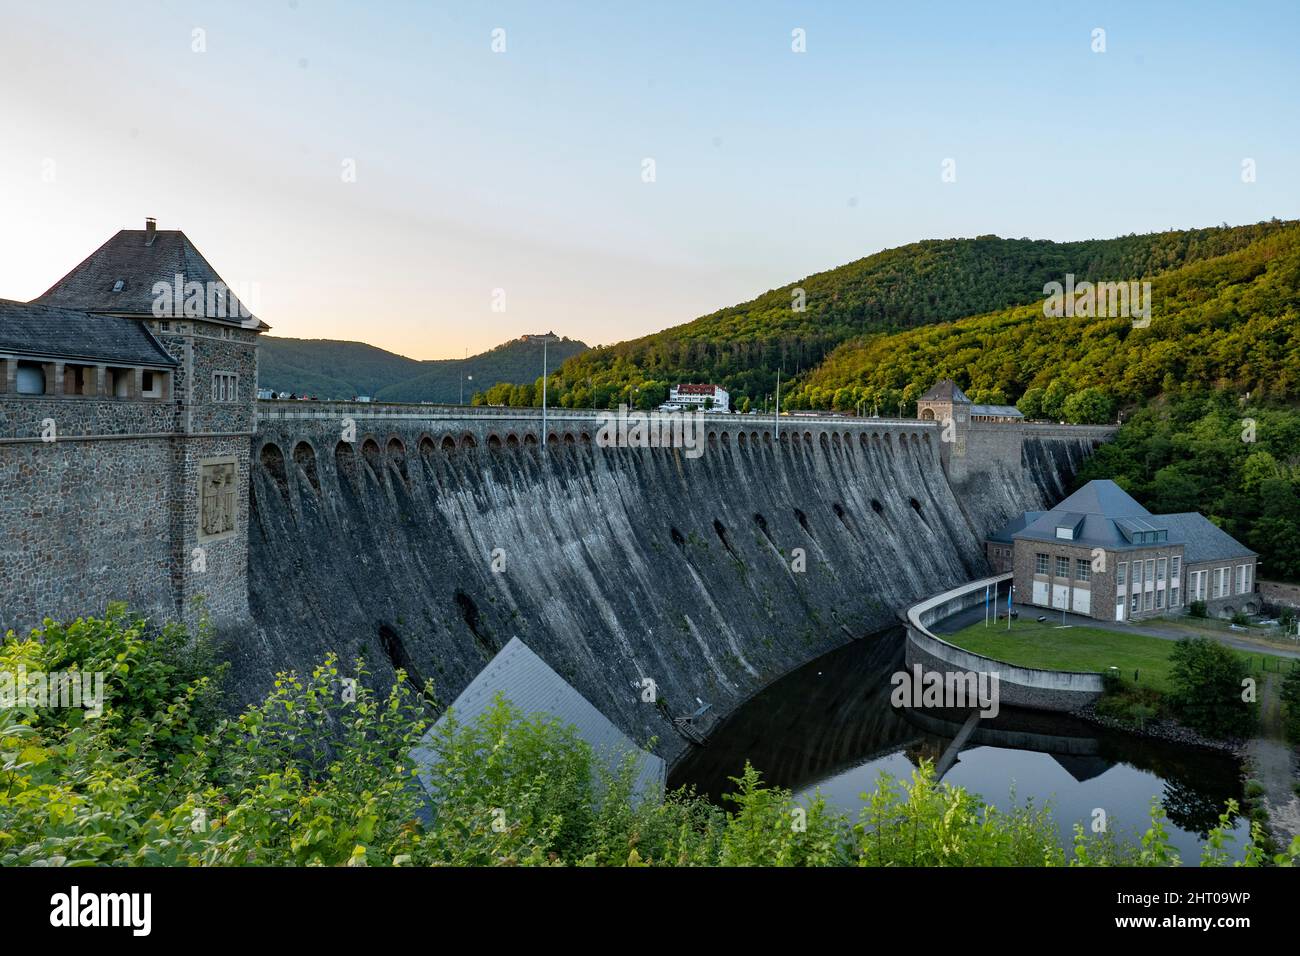 Mur de soutènement d'Edersee en Allemagne. Énergie renouvelable par l'hydroélectricité Banque D'Images